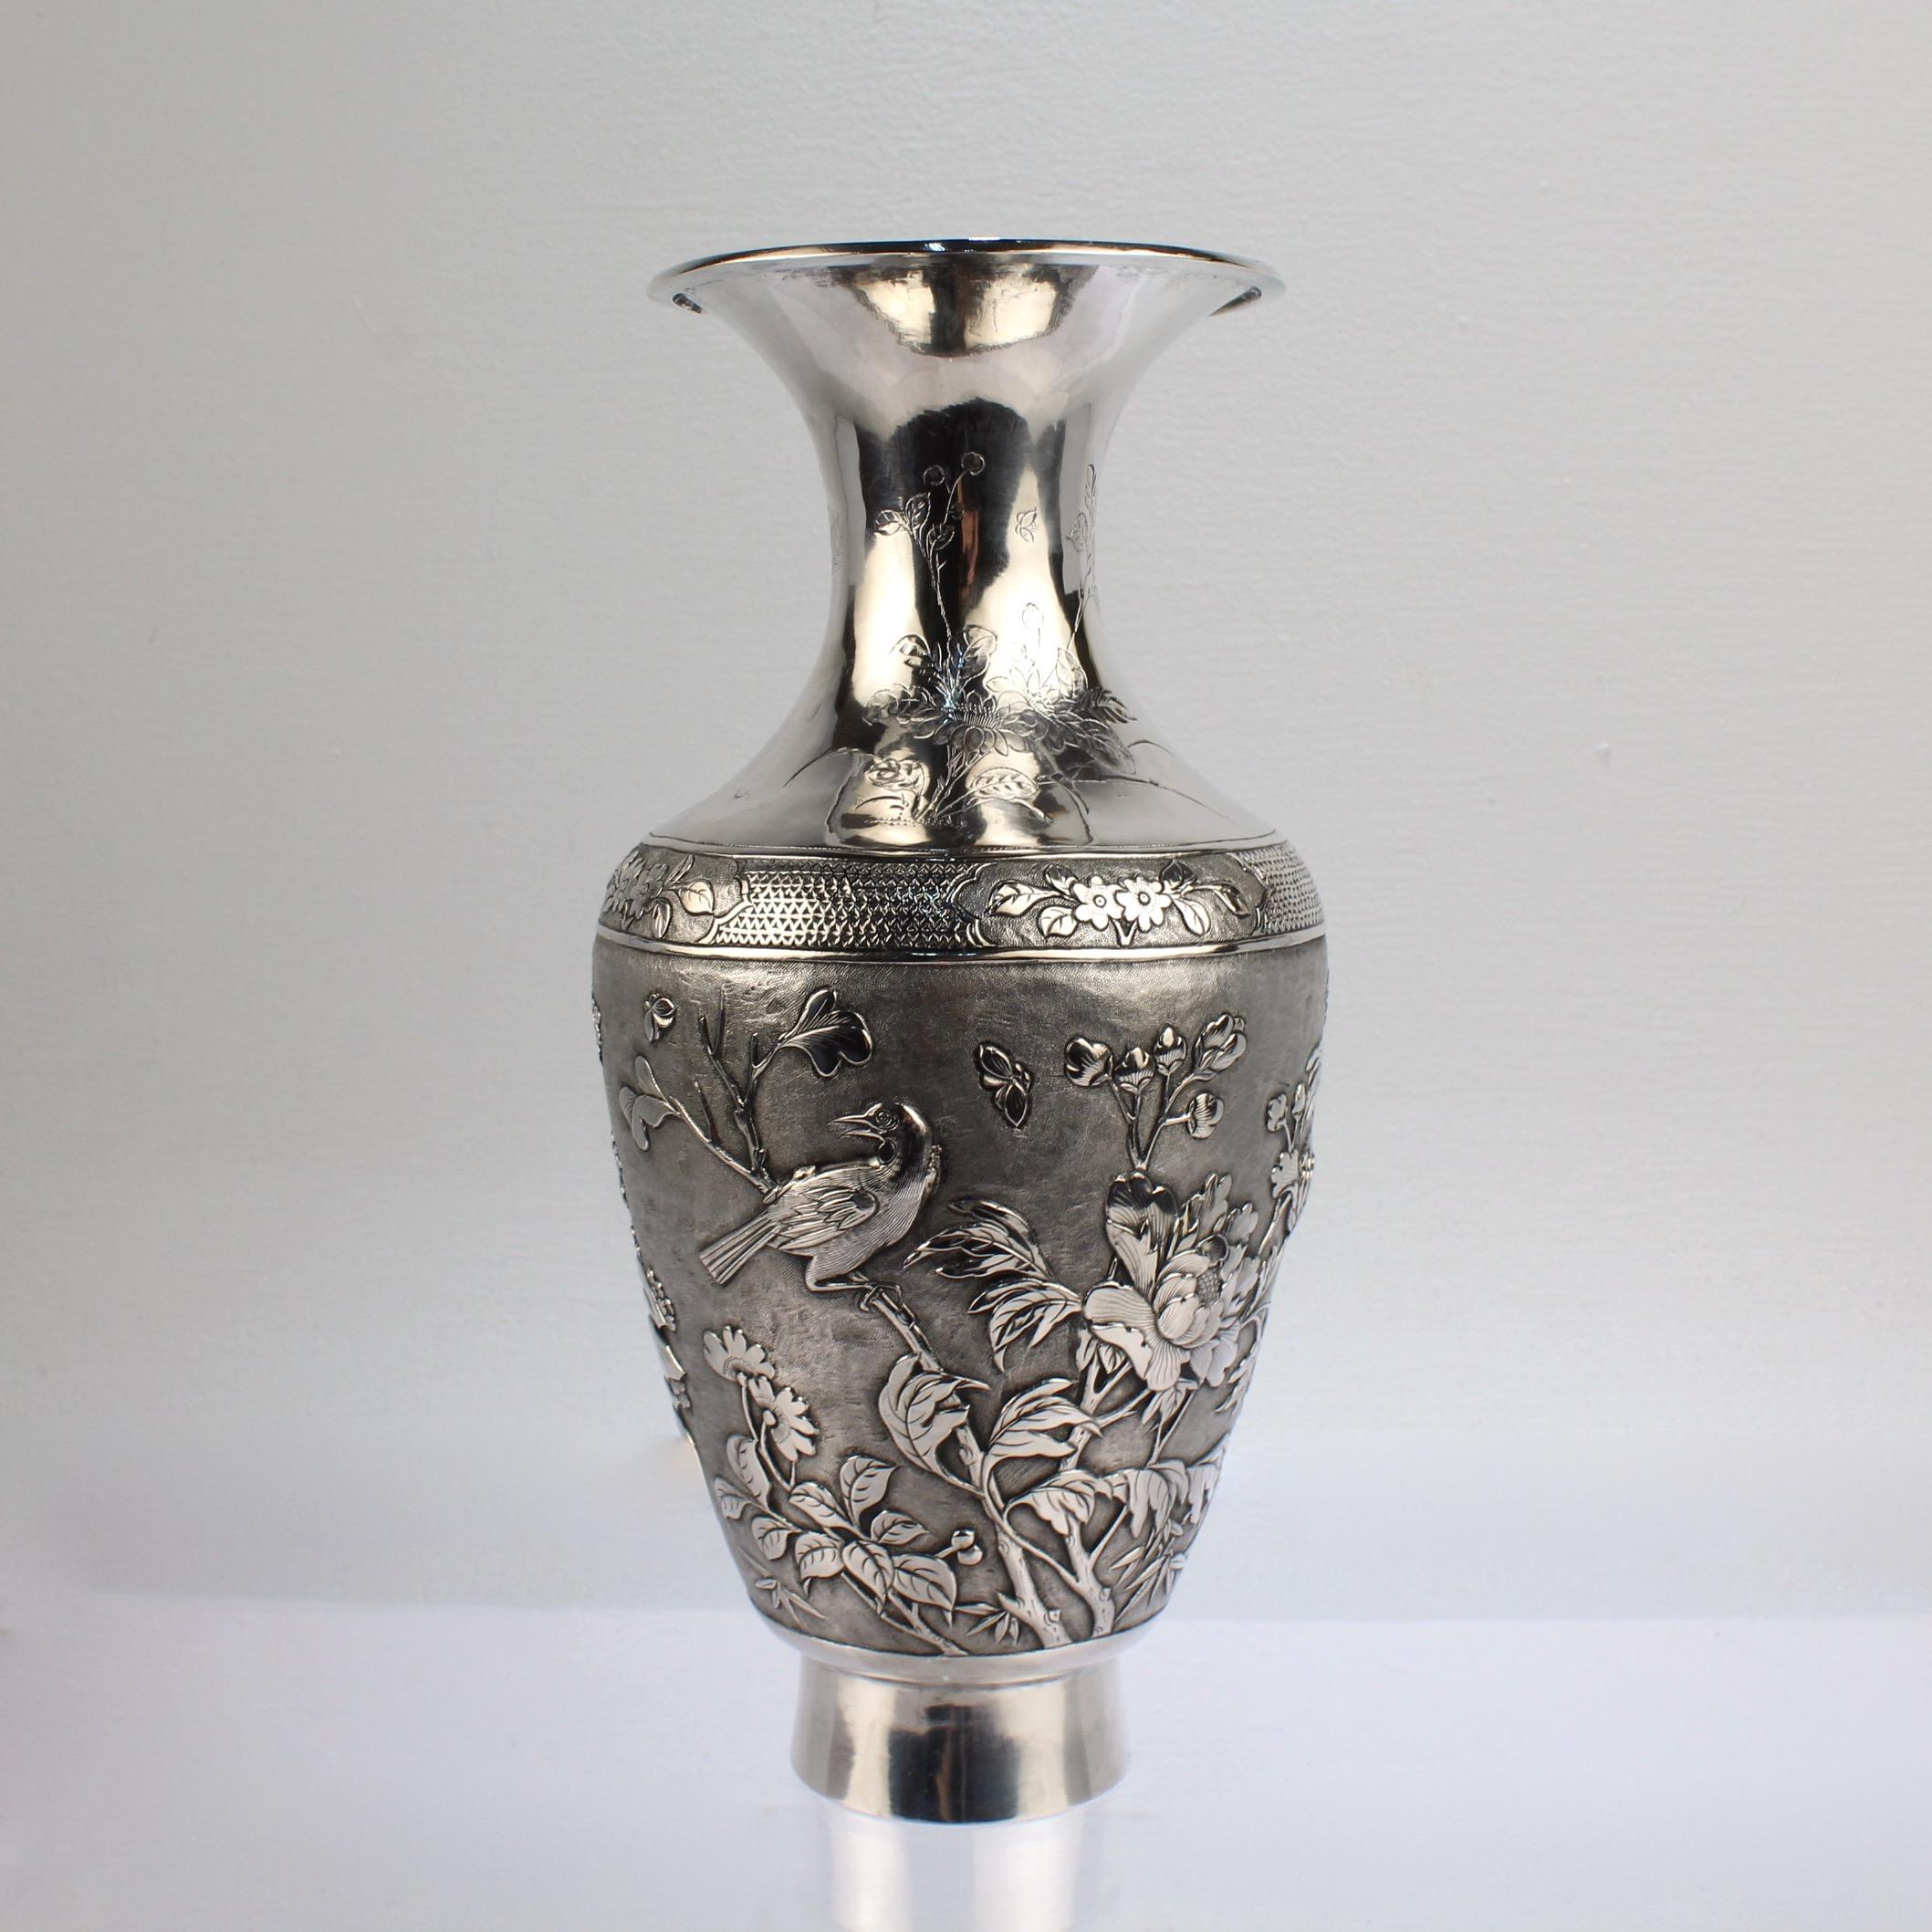 Eine feine antike chinesische Export massivem Silber Vase.

Mit erhabenen Repoussé-Figuren, Blattwerk und Wolken sowie graviertem Dekor.

Signiert auf dem Sockel mit chinesischen Schriftzeichen (möglicherweise für Hongyu und Shanghai).

Einfach eine